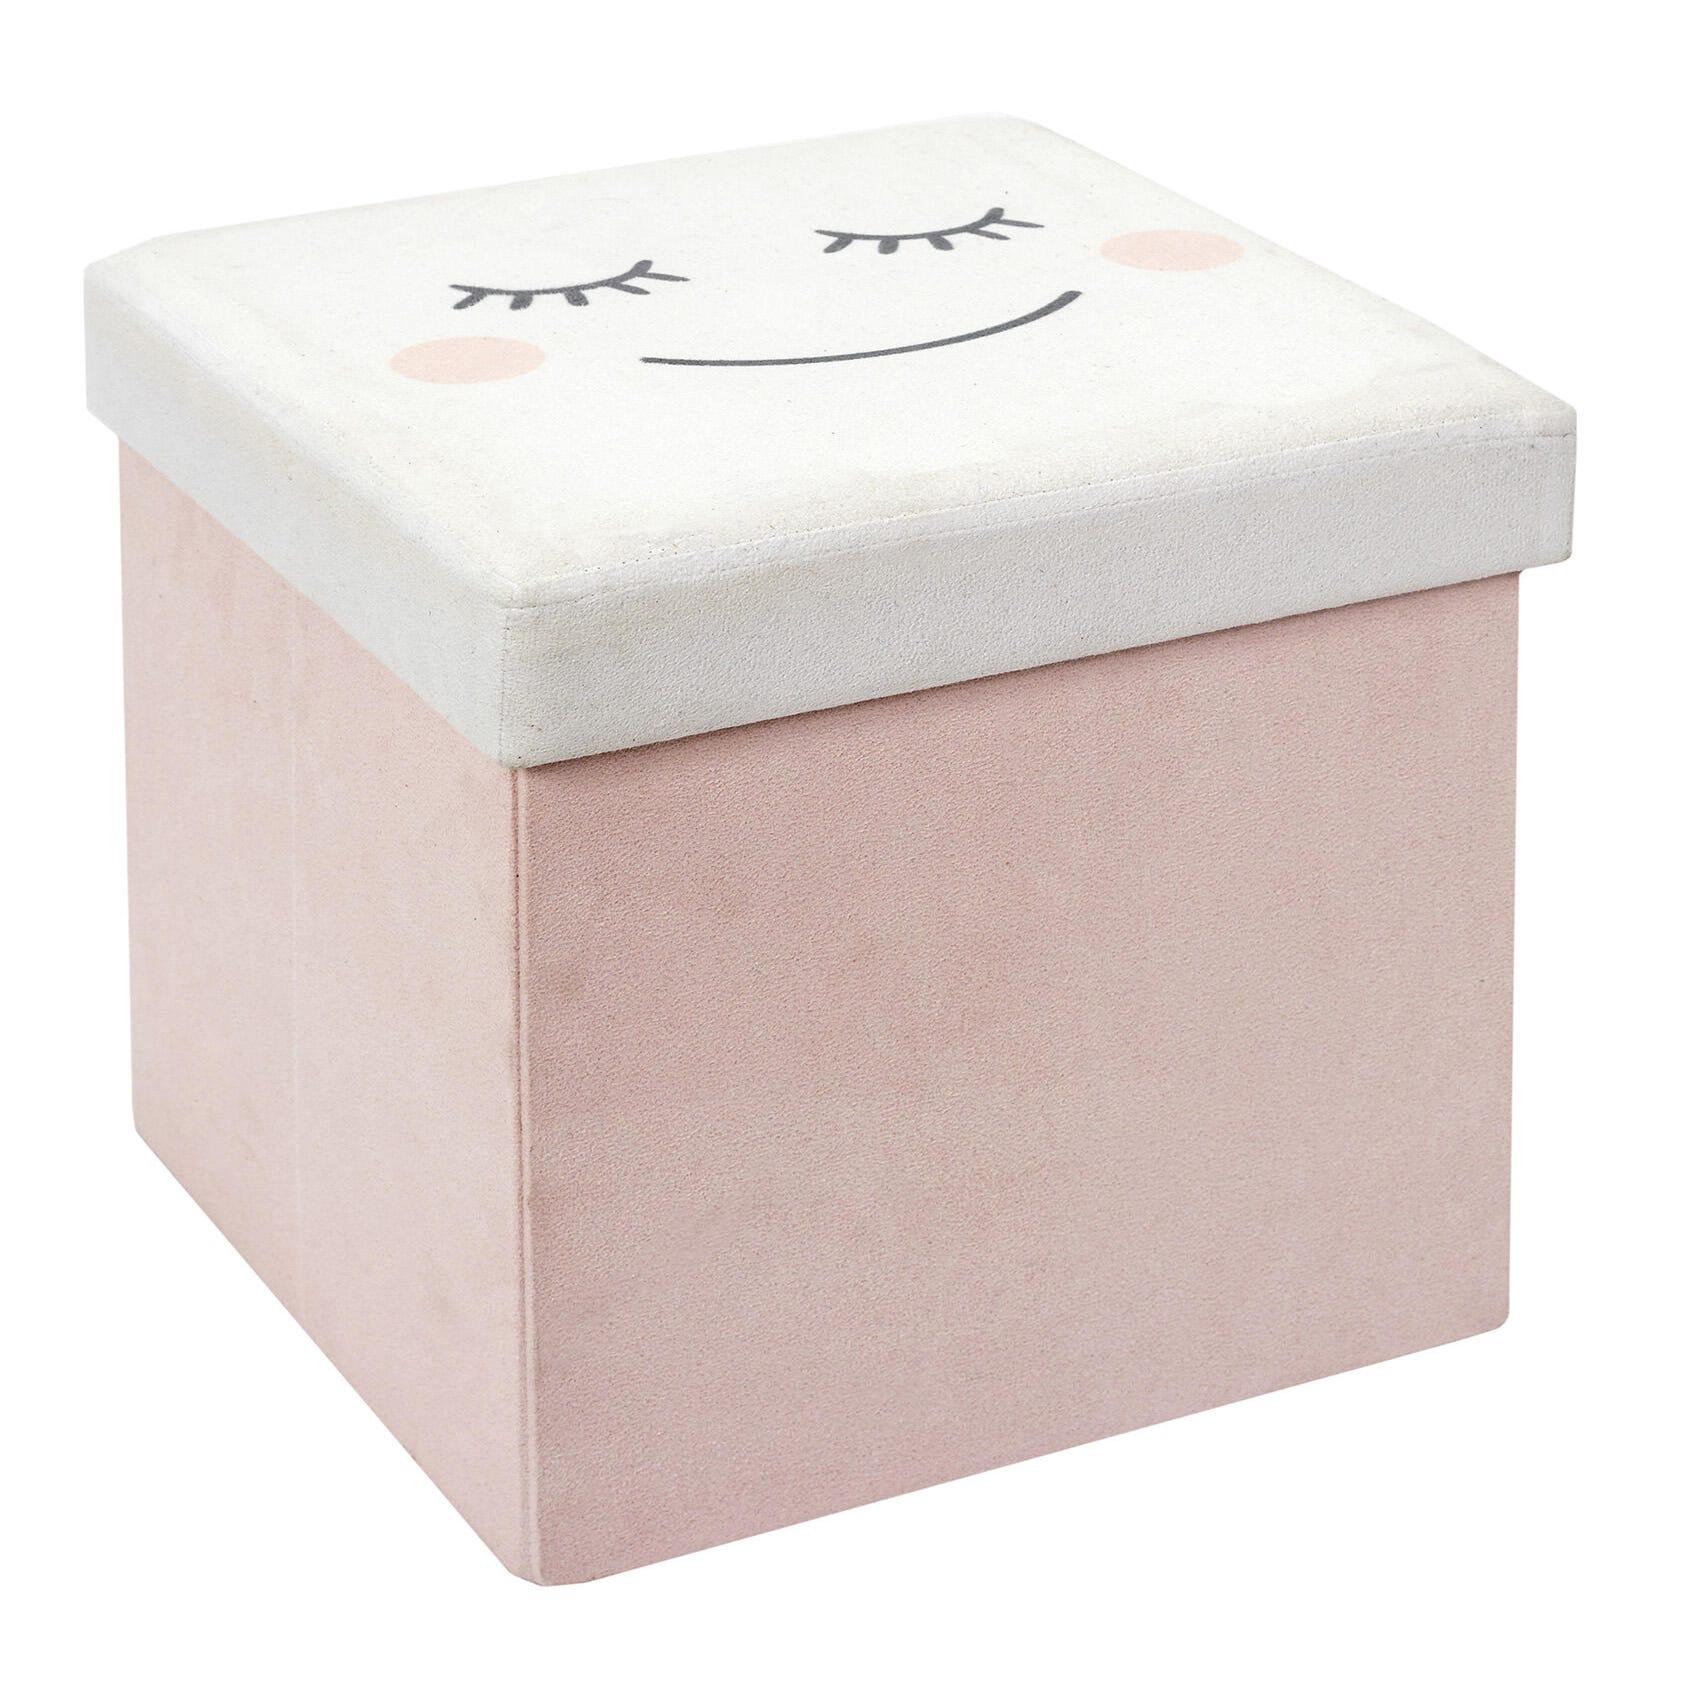 Embargosalobestia - Puf caja almacenaje infantil cebra rosa 30x30x30 - 7€   infantil-cebra-rosa-30x30x30.html 🔷🔶𝑷𝑼𝑭𝑭 𝑸𝑼𝑬 𝑪𝑯𝑶𝑳𝑳𝑶𝑺🔷🔶  Todavía no le has comprado a tus